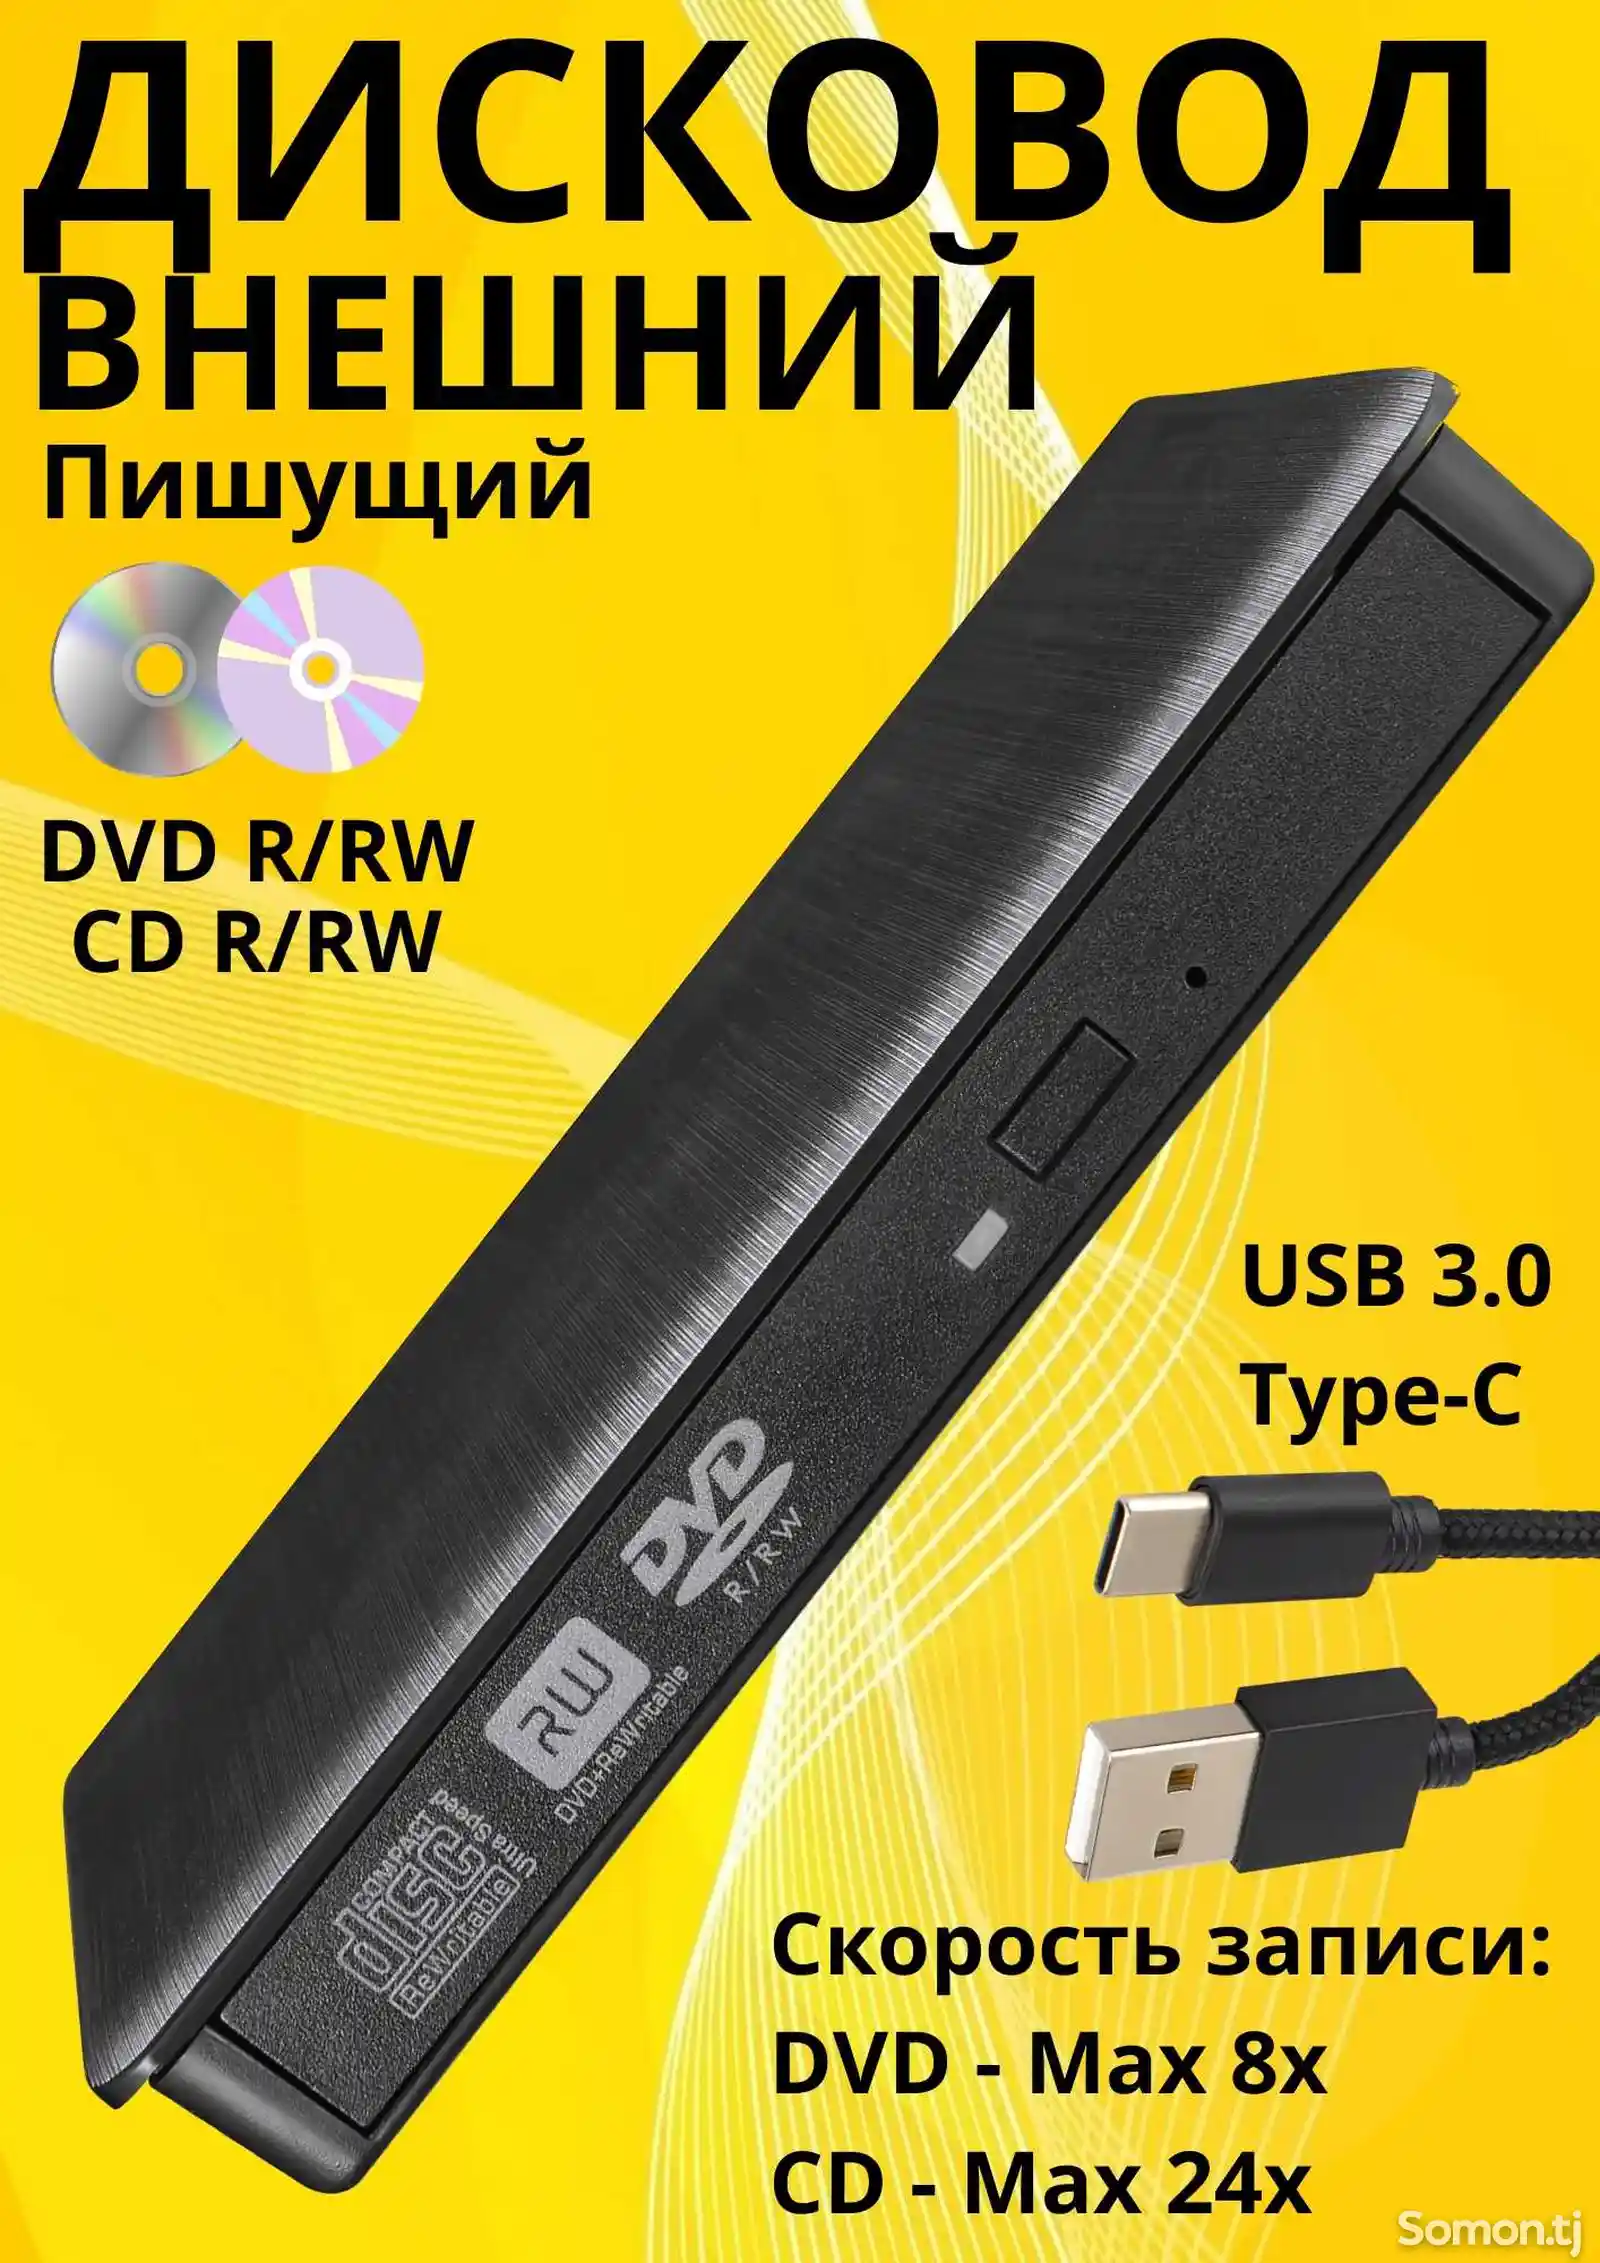 Внешний дисковод DVD-RW оптический привод USB 3.0 и type-c для ноутбука и ПК-1